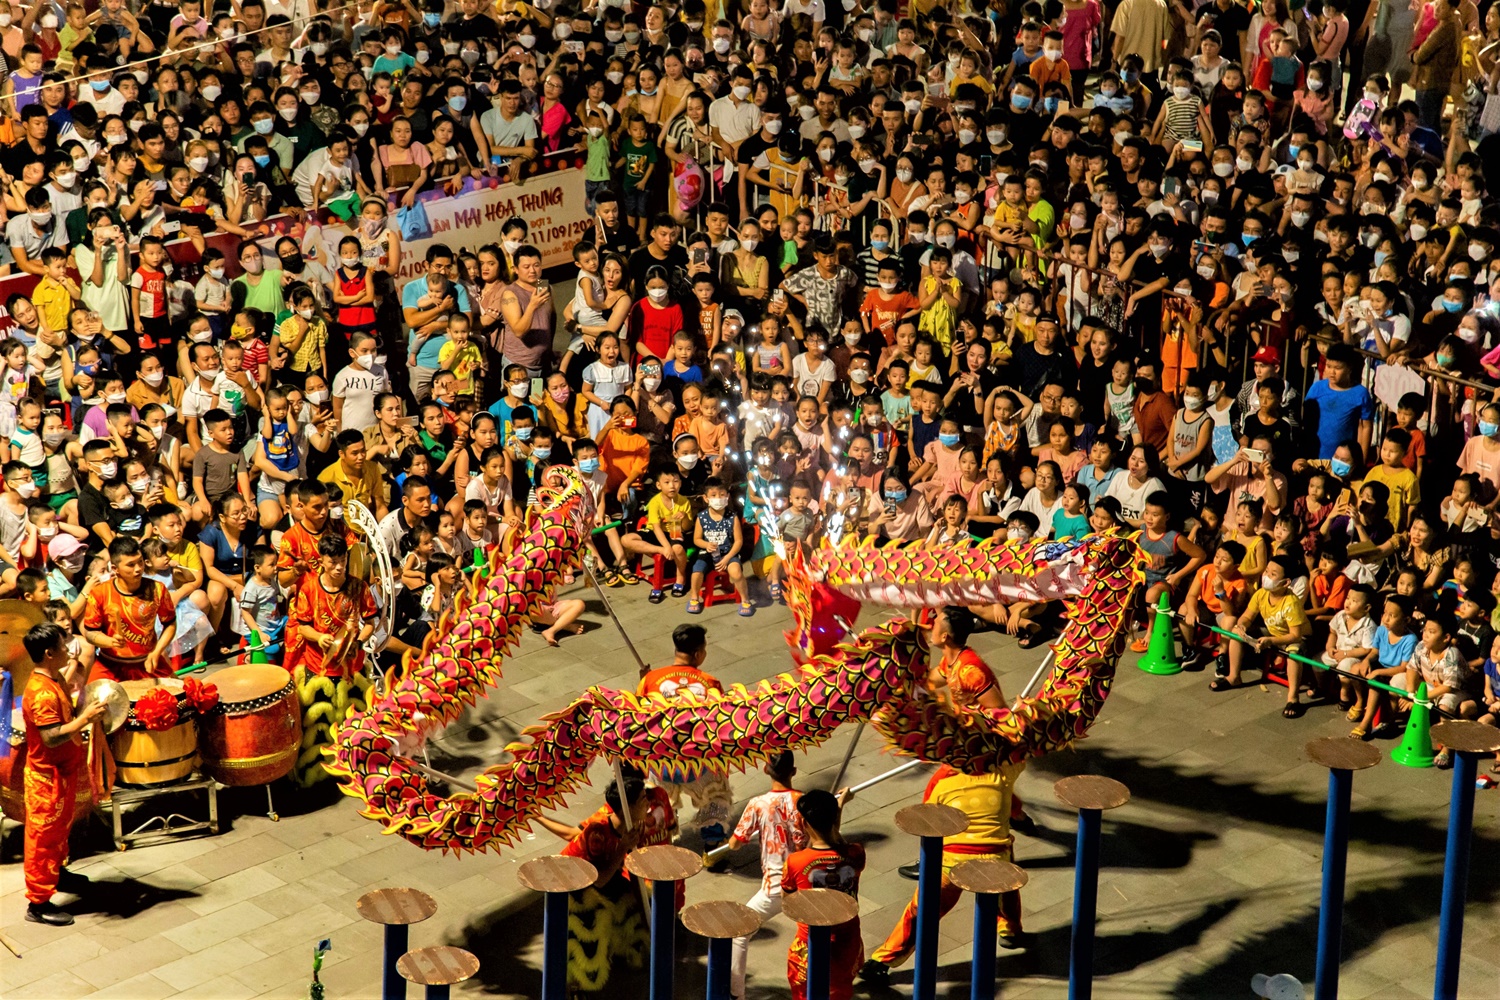 Hàng nghìn người chen chân xem múa lân, chợ đêm Đà Nẵng ken kín lối - Ảnh 5.